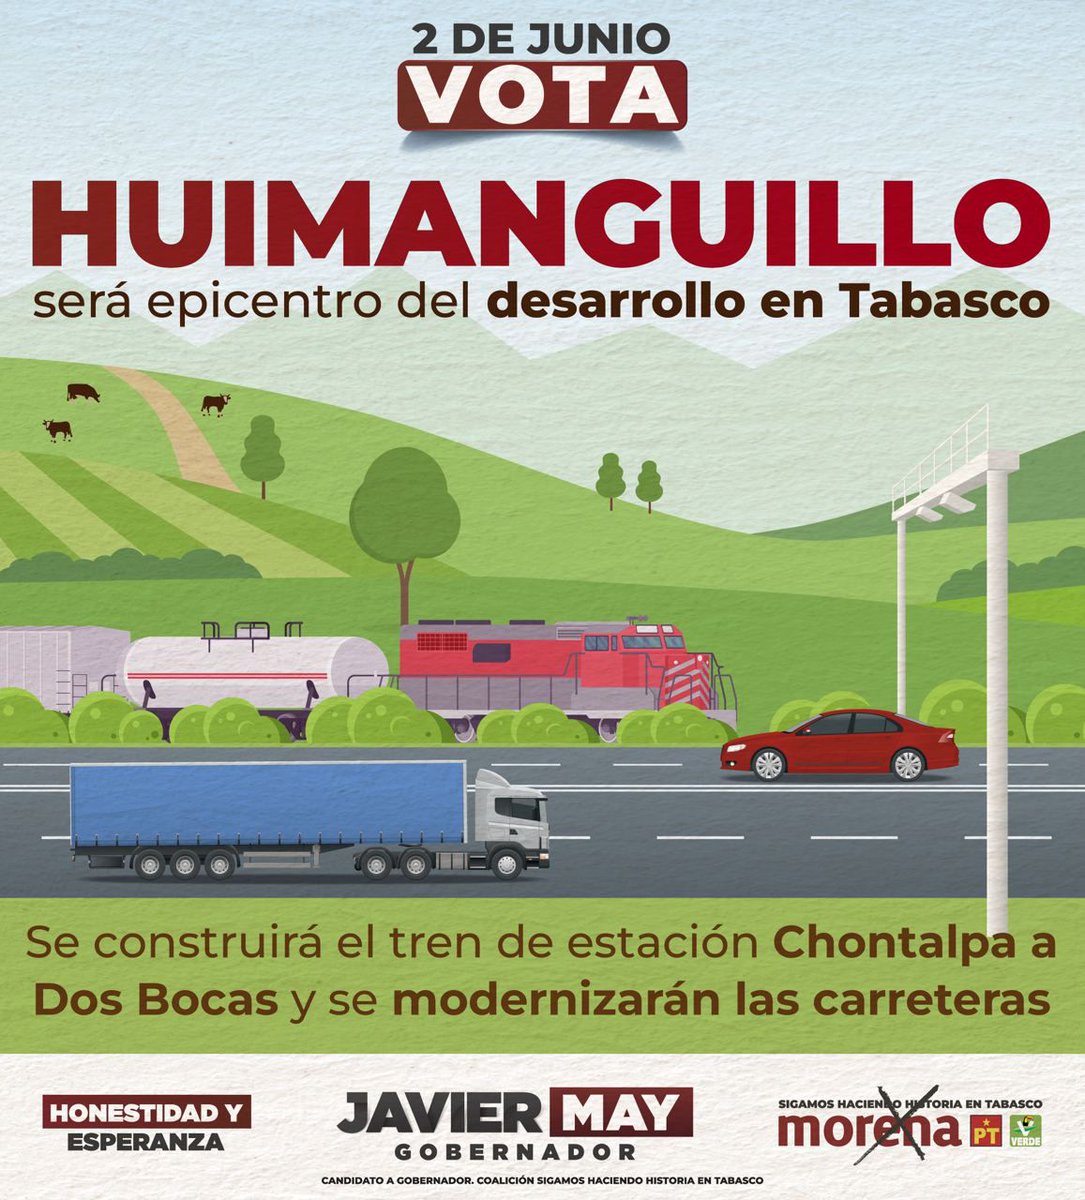 Hoy en Huimanguillo informaremos sobre la construcción del Tren de Estación Chontalpa a Dos Bocas, entre otros compromisos. Tendremos caminata en La Venta, reunión con transportistas, ganaderos, maestros y petroleros, y asamblea en Palo Mulato Viejo, Huapacal 2da y en el C-31.